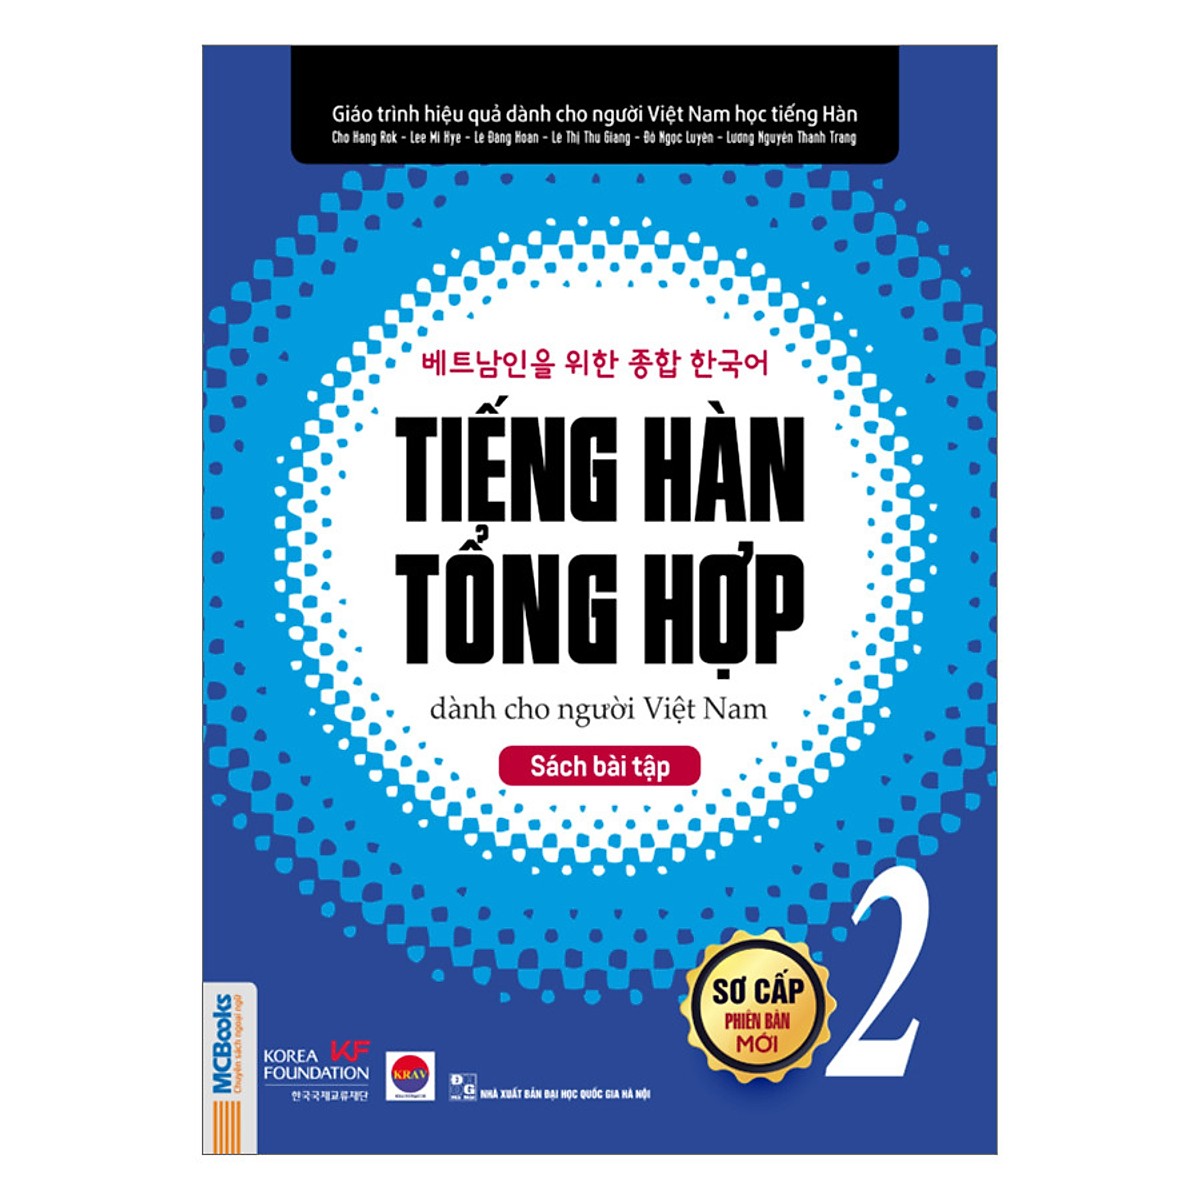 Combo bộ 4 cuốn Giáo trình tiếng Hàn tổng hợp dành cho người Việt Nam kèm 300 từ Hàn thông dụng TV